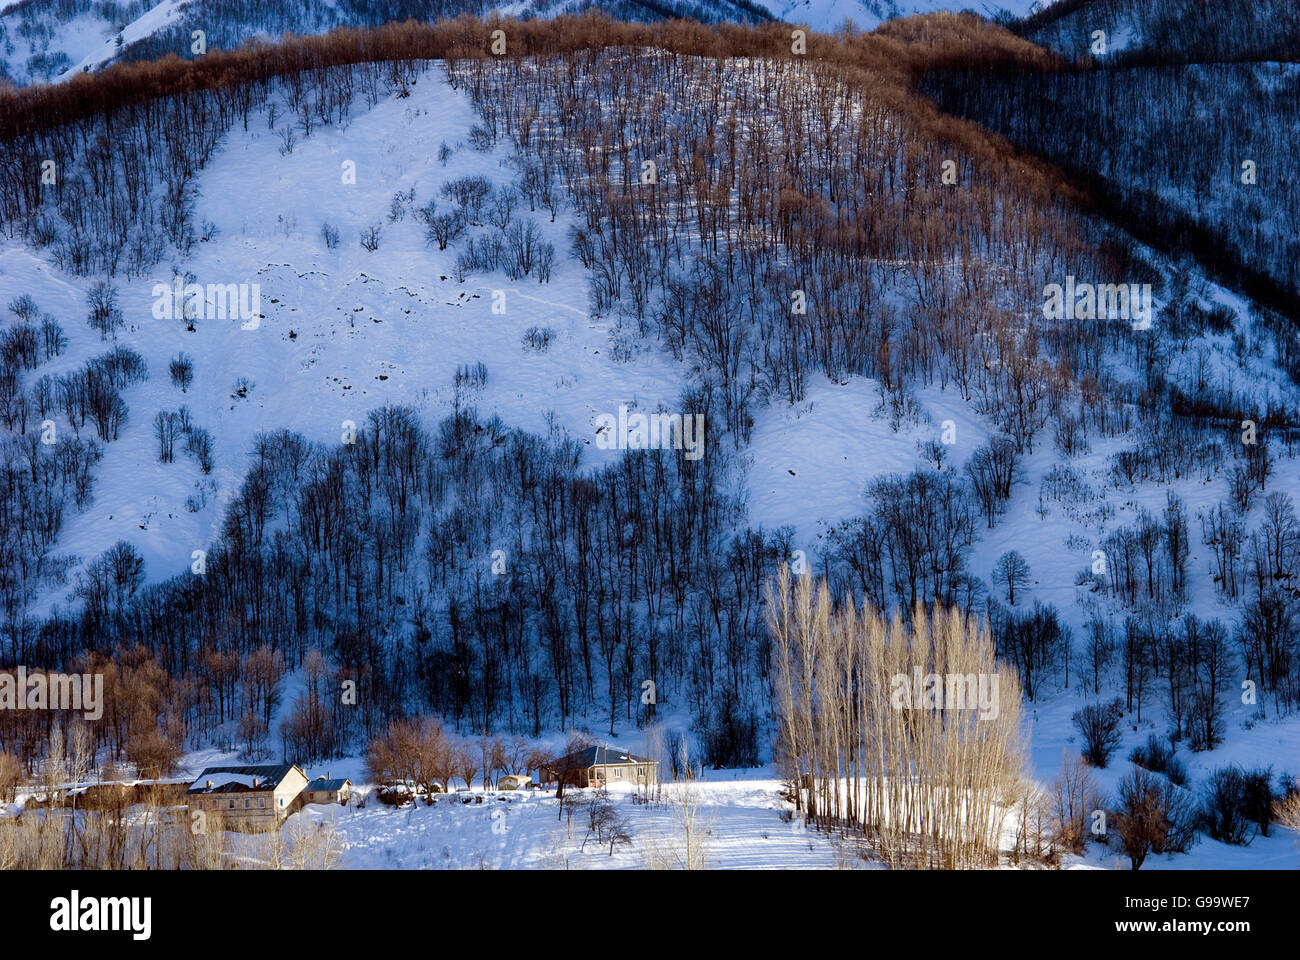 Luftaufnahme eines Bergdorfes befindet sich im Yedisu Dorf, Kelhac Tal, Türkei. Stockfoto